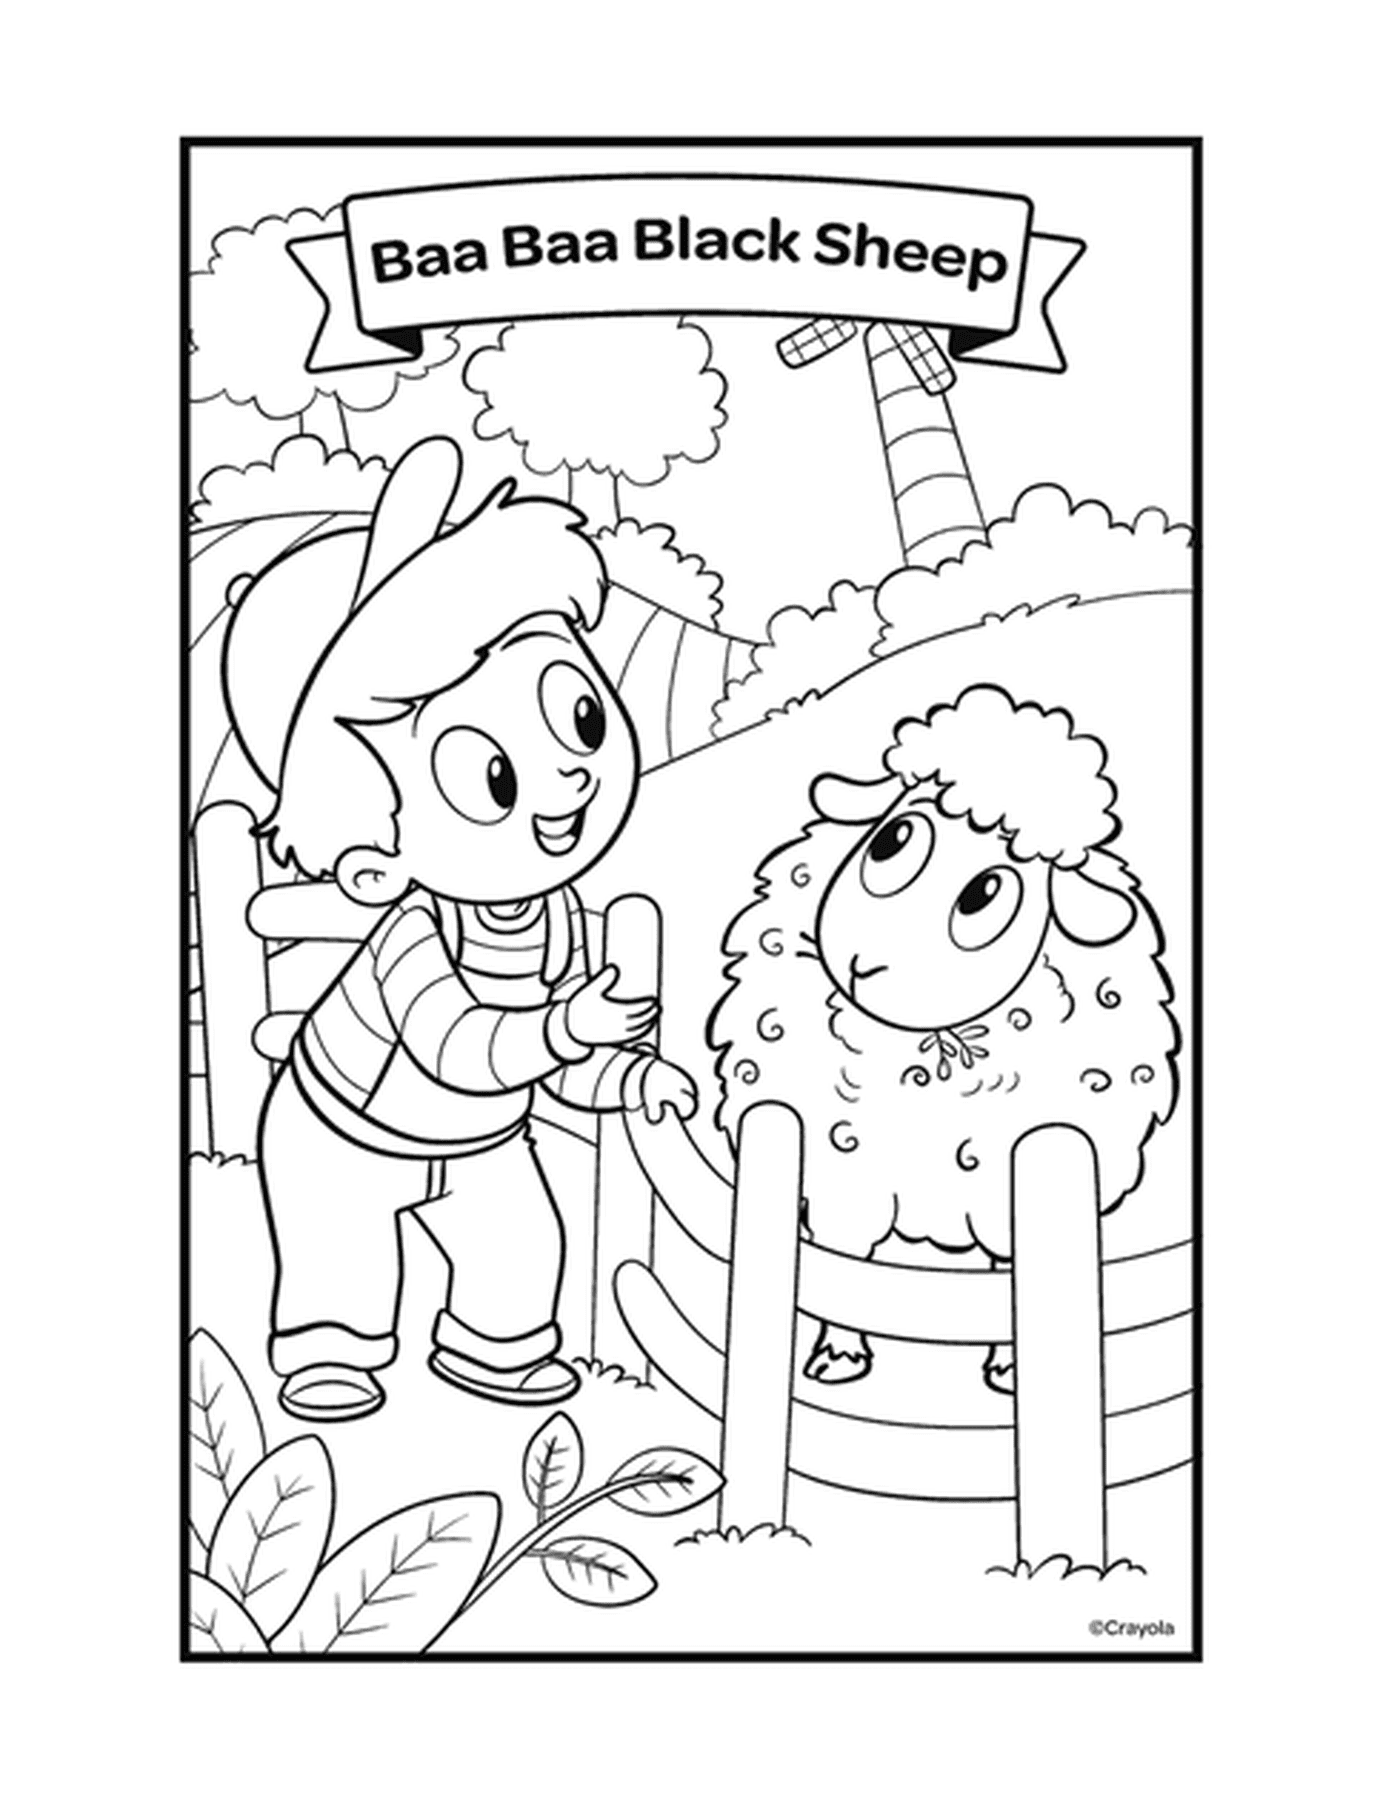  Baa Baa Baa Black Sheep 与一个男孩在笔里抚摸羊群的人物 Baa Baa Baa Baa Black Sheep 